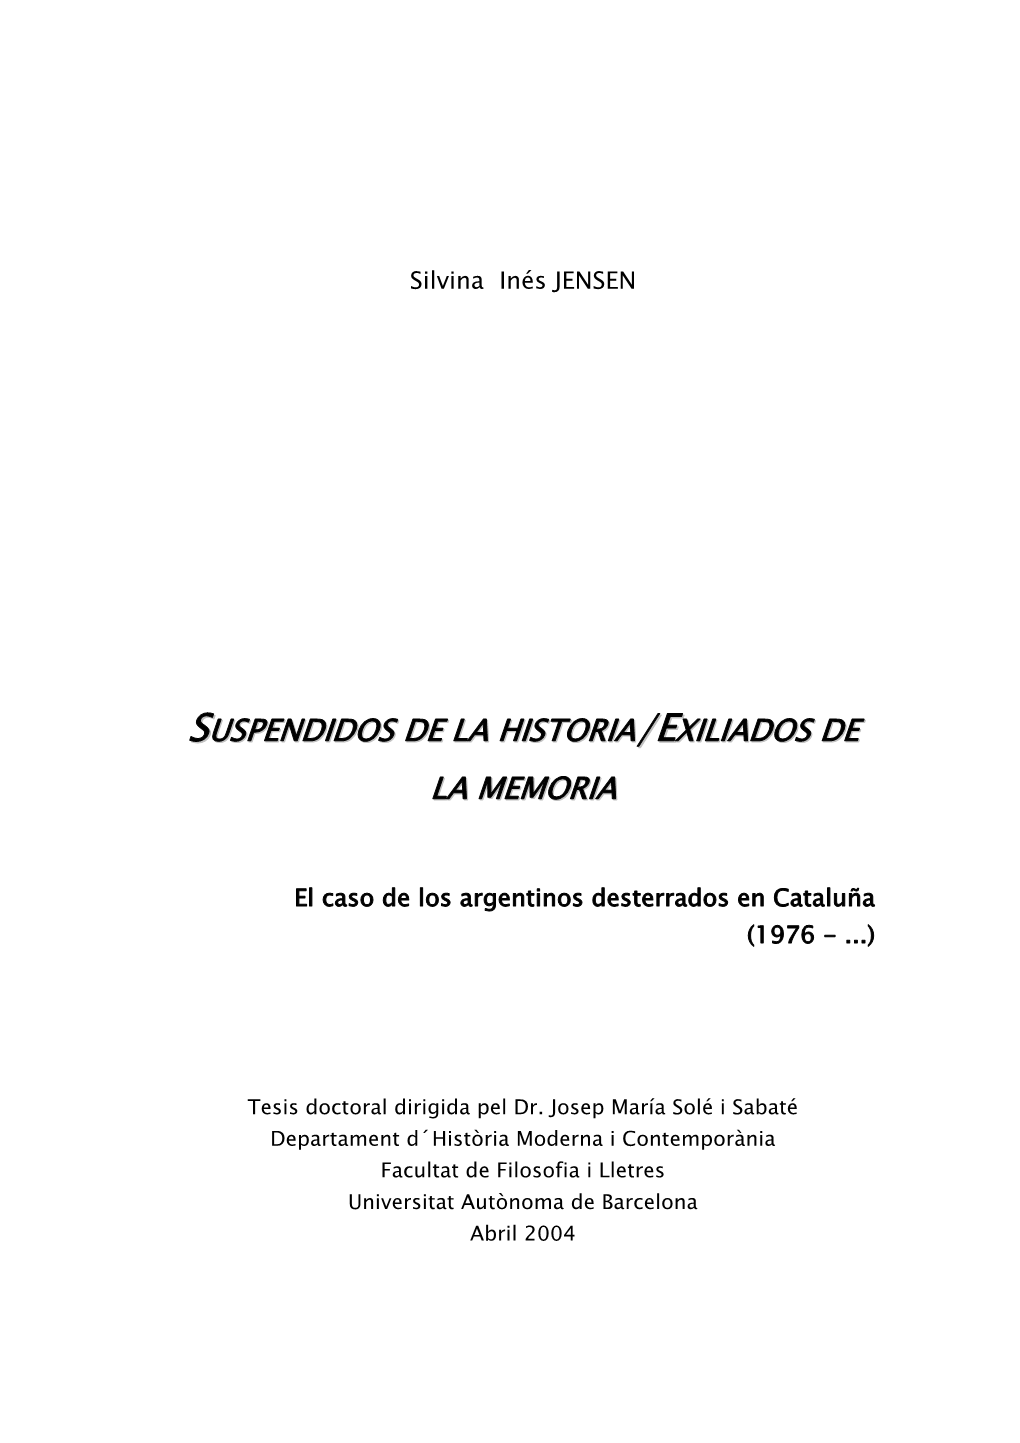 Suspendidos De La Historia/Exiliados